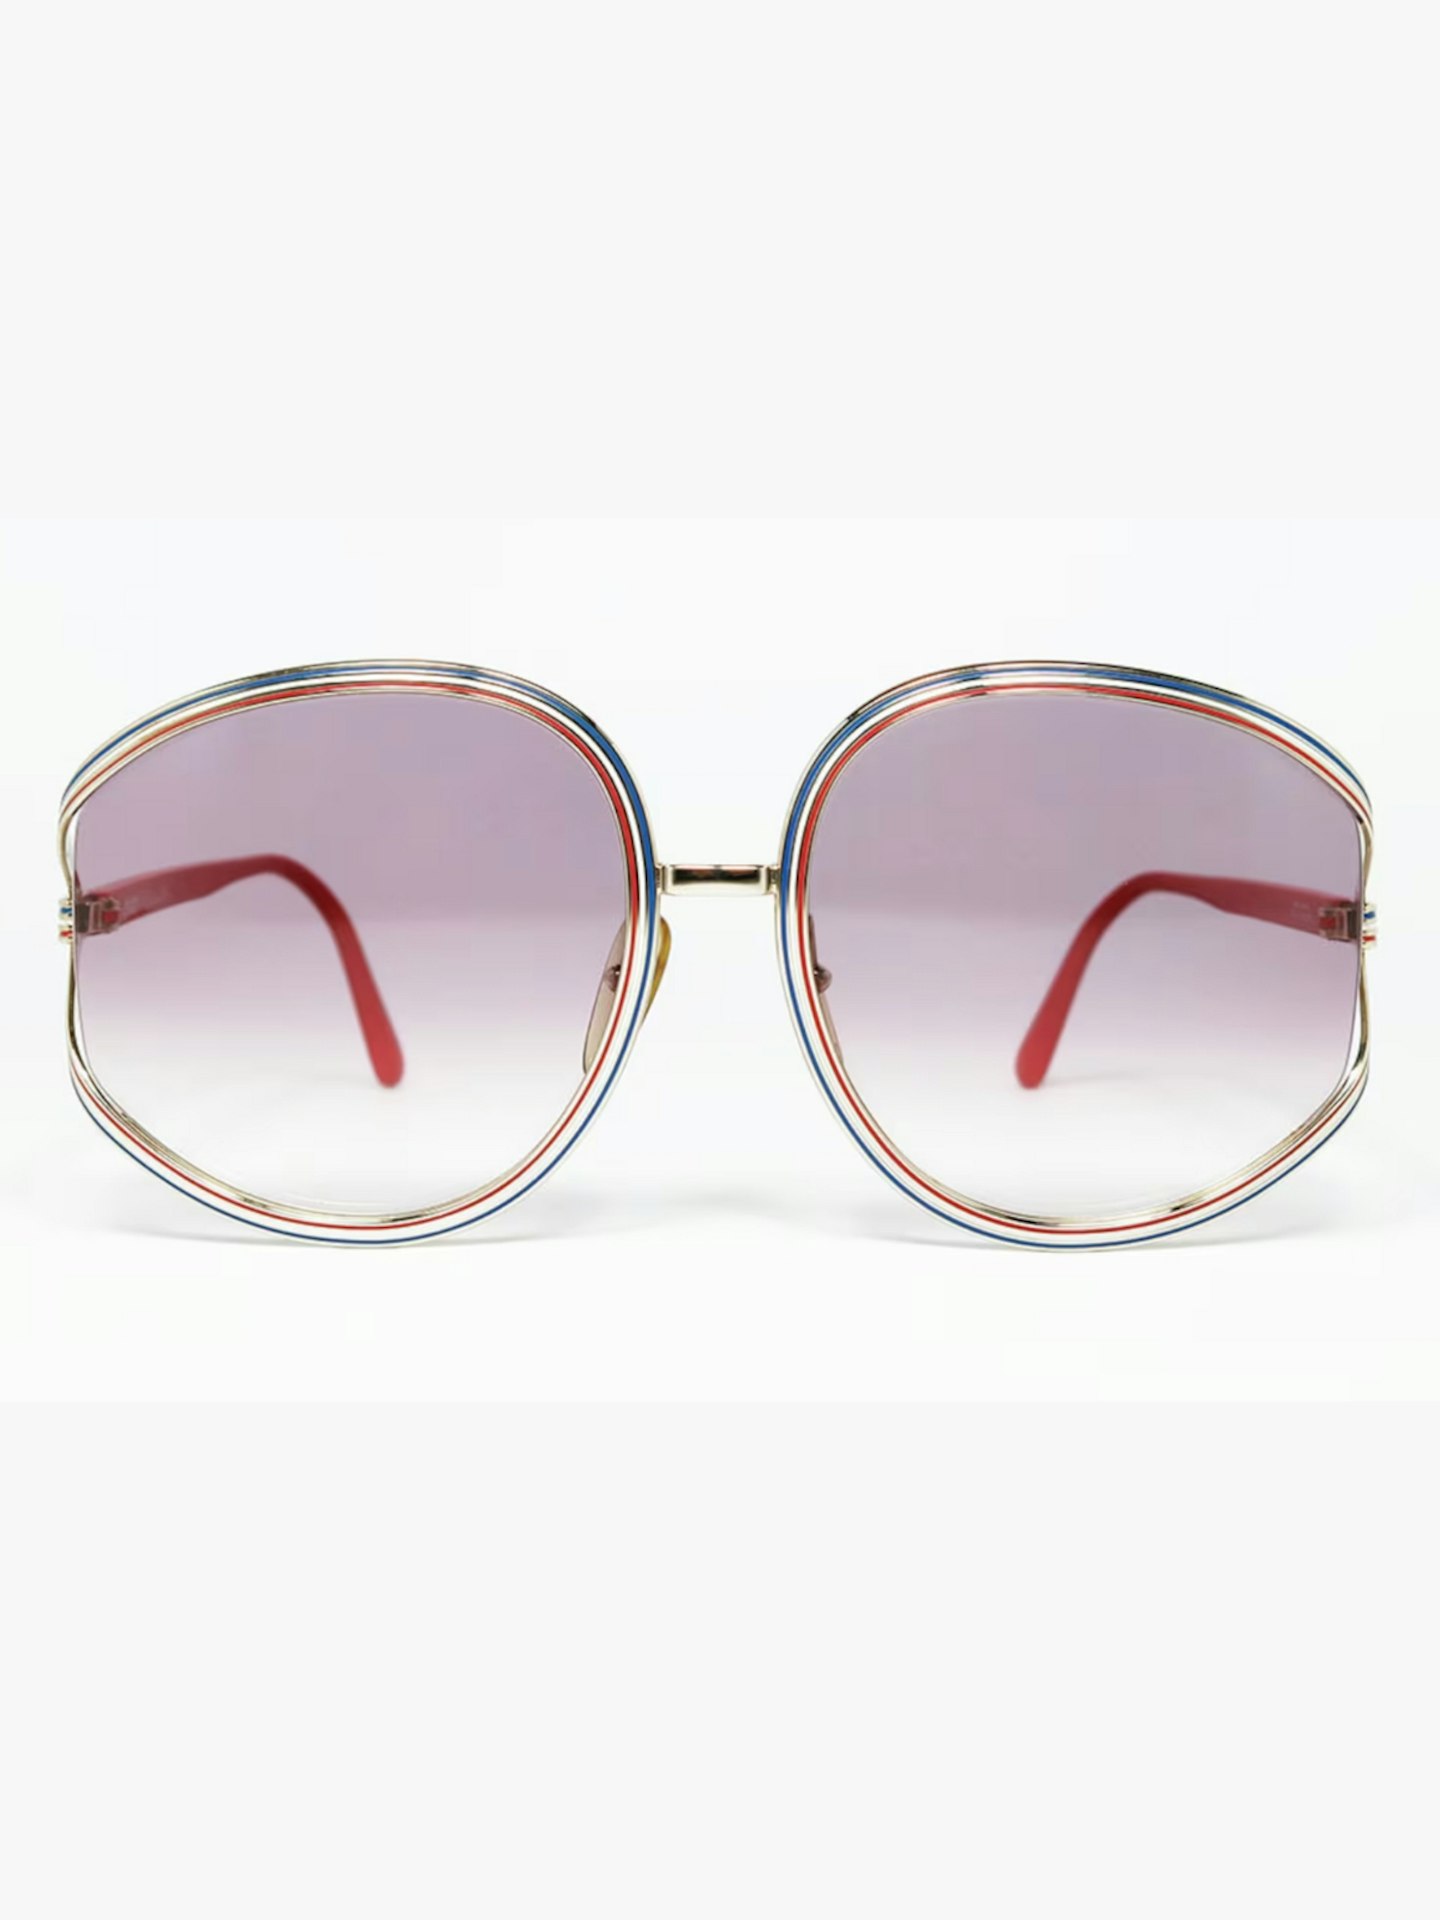 Christian Dior 2475 Col. 45 RARE Original Vintage Sunglasses 